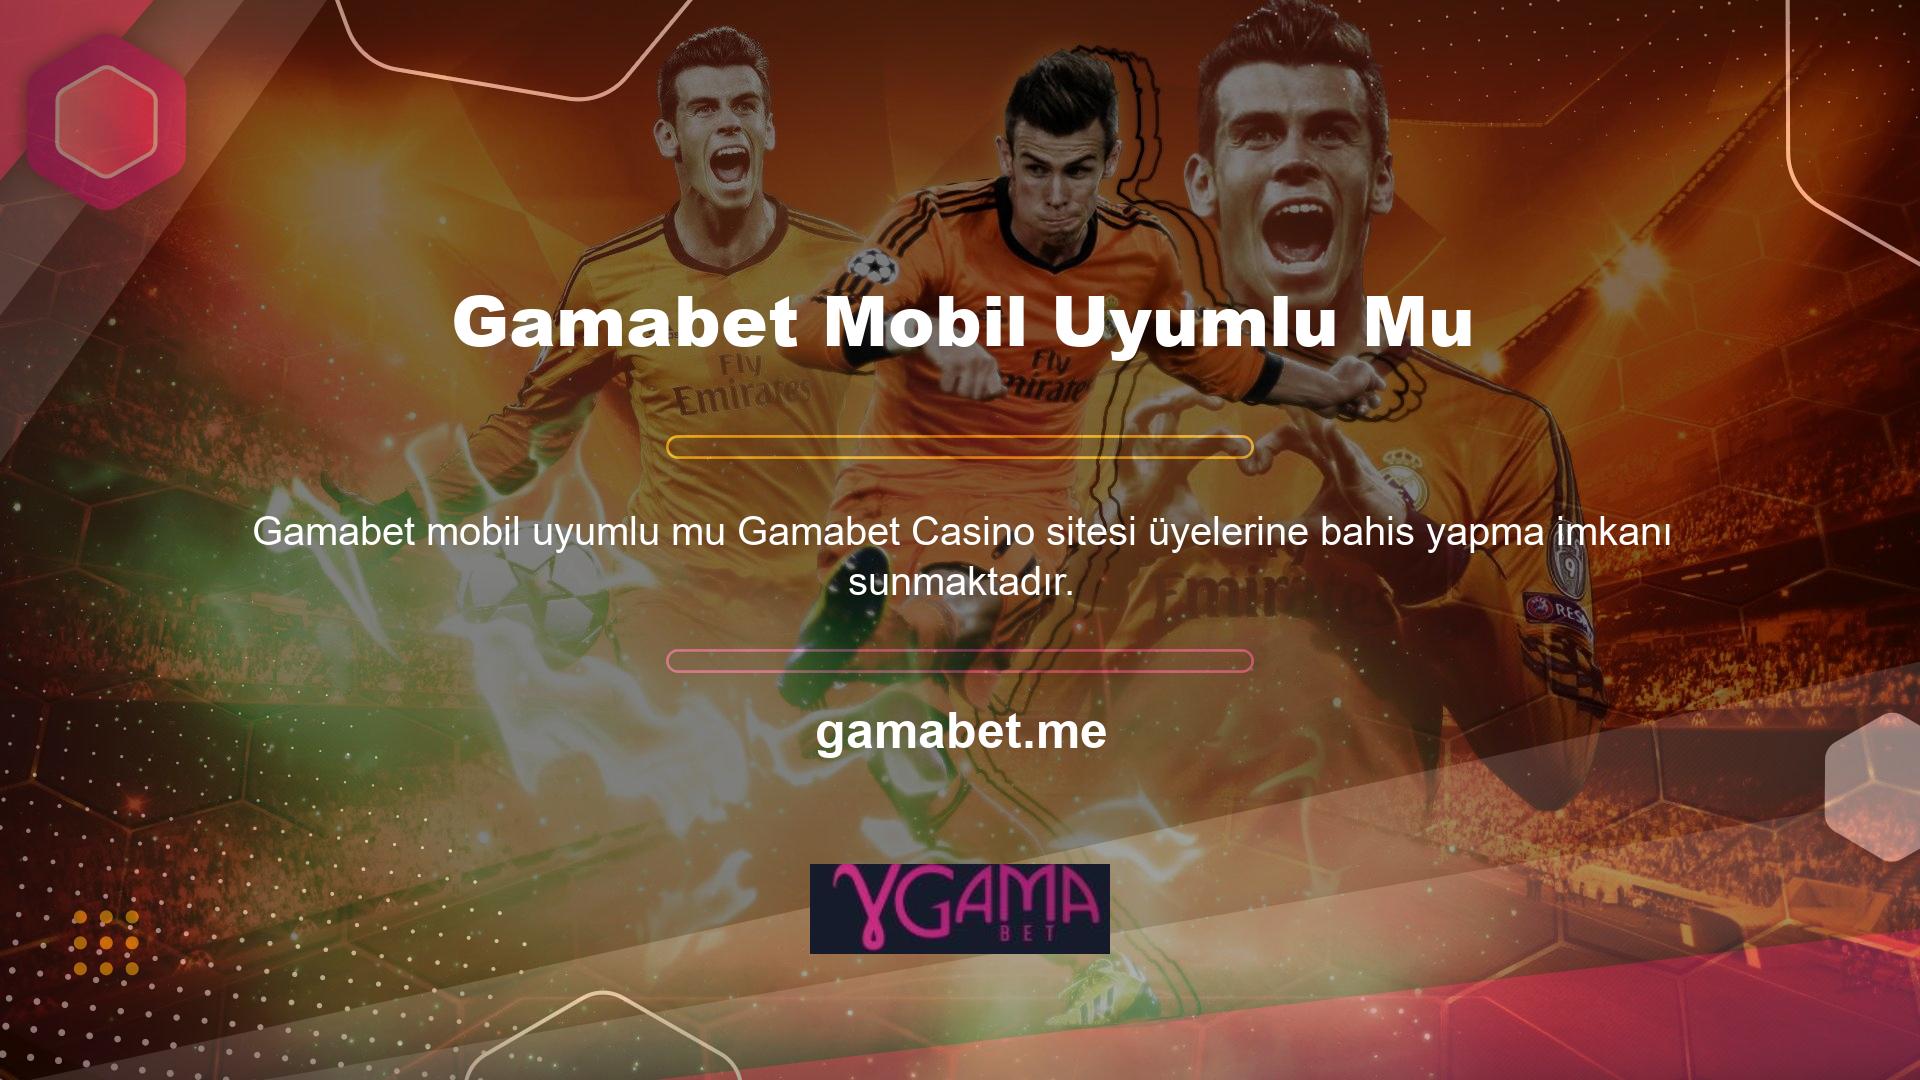 Casino and Gamers sanal casino web sitesi, 7 güvenilir sanal casino şirketinin en popülerlerinden biridir